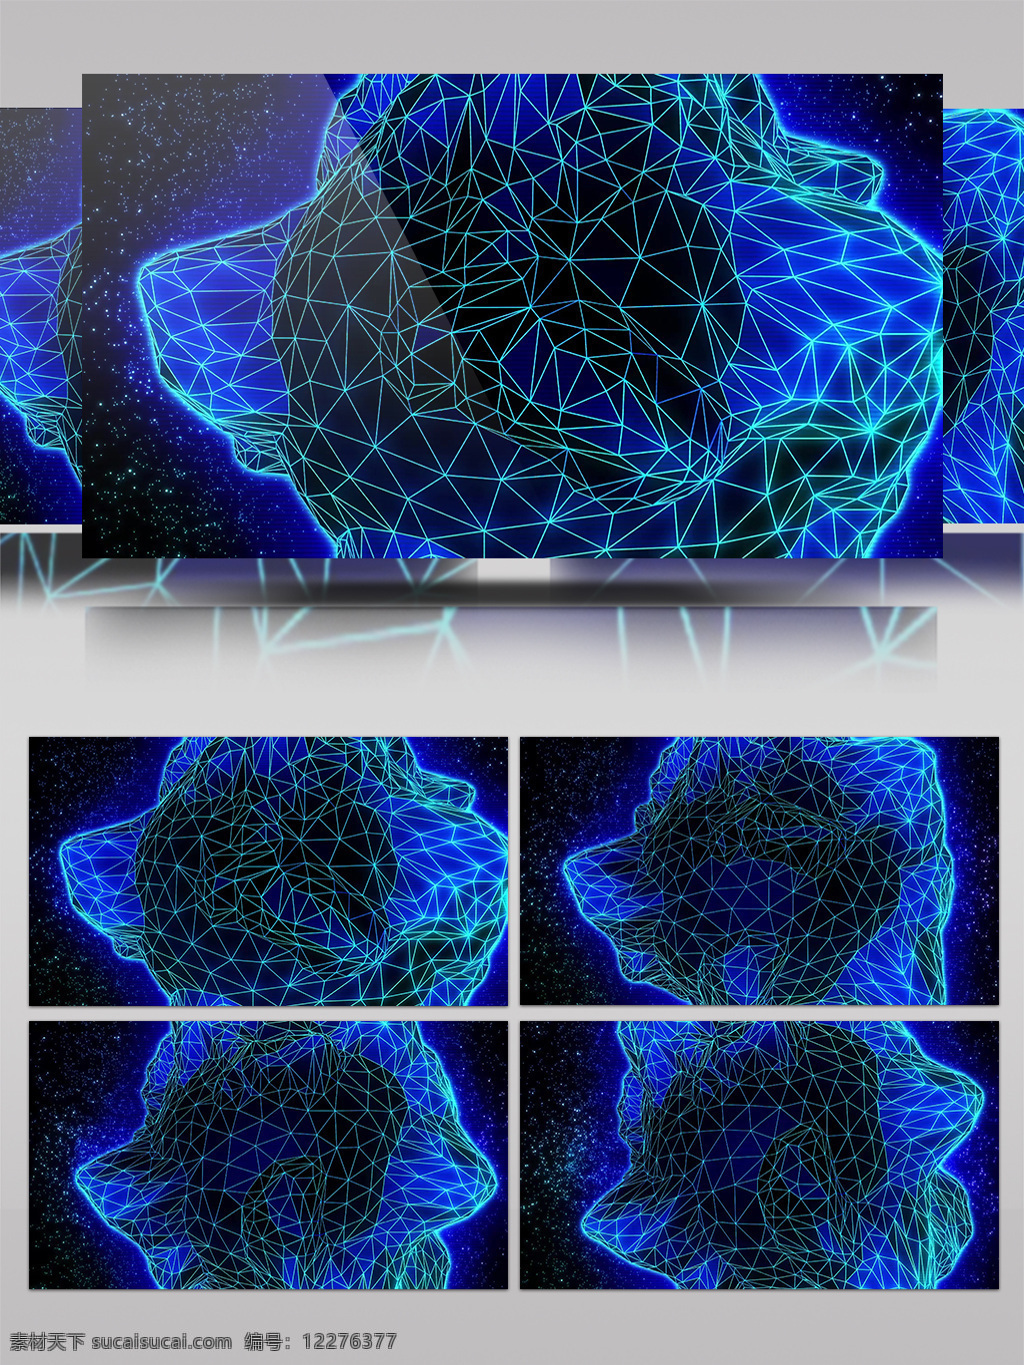 蓝色 花朵 视频 蓝色粒子 粒子海 炫酷蓝色 三维动态类 几何魔法 空间几何变换 3d视频素材 特效视频素材